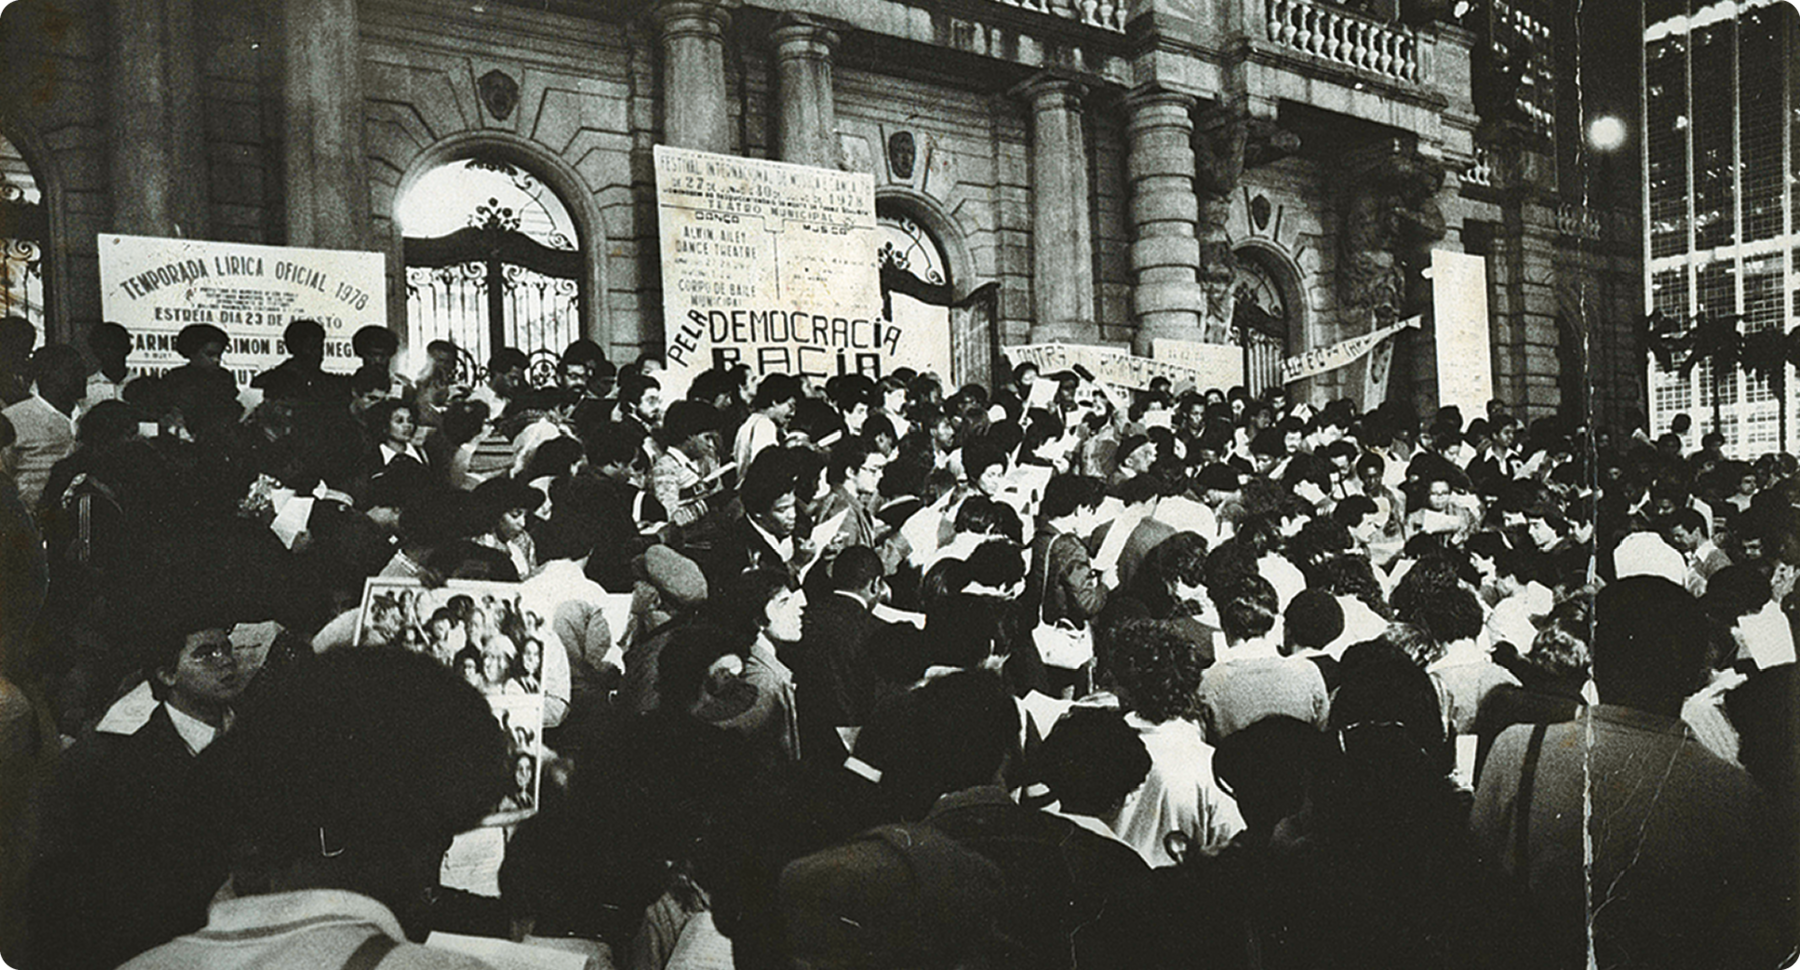 Fotografia em preto e branco. Diversas pessoas em uma rua segurando cartazes e placas.